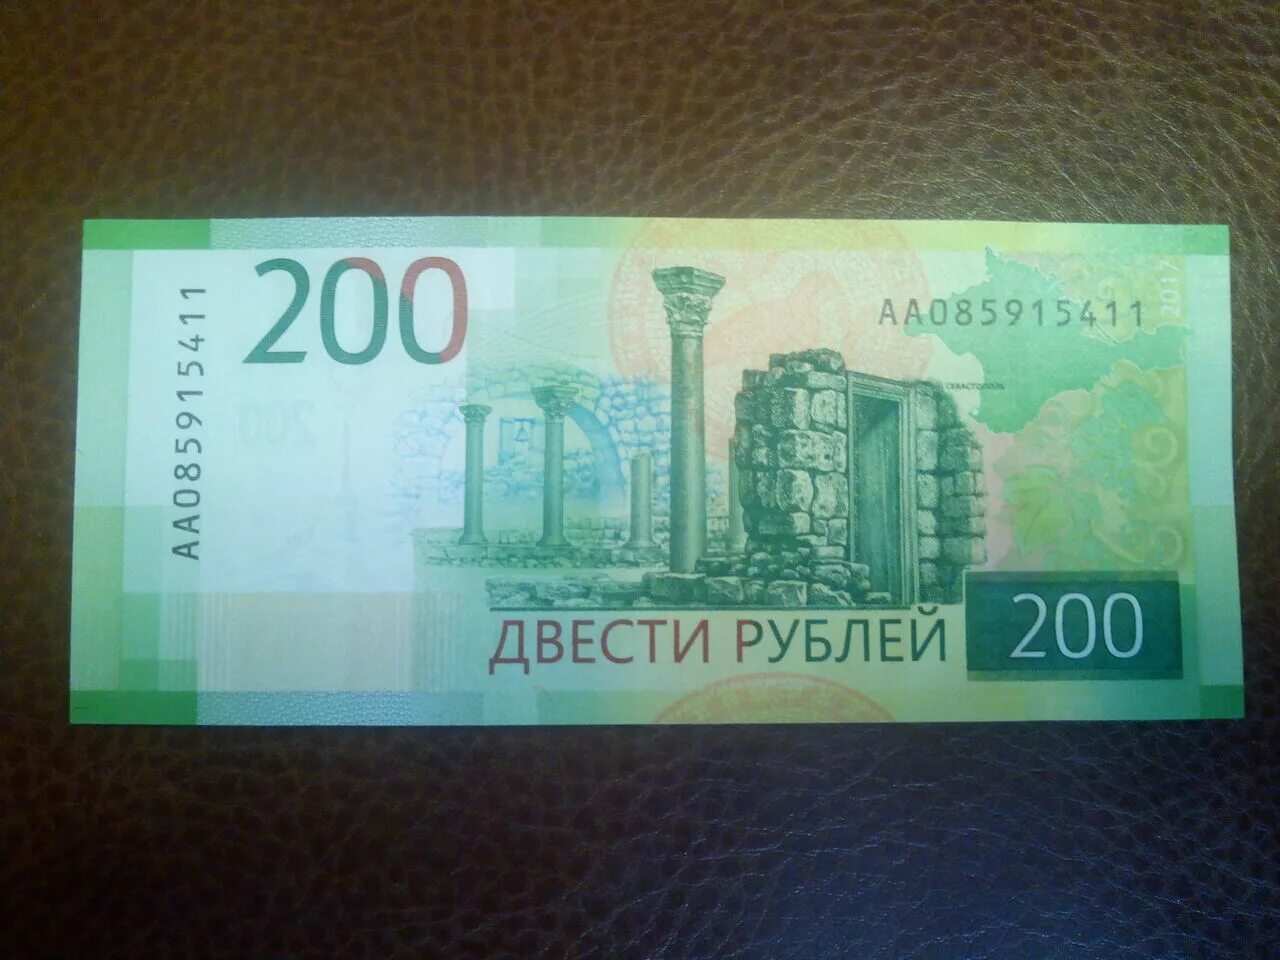 200 Рублей банкнота. 200 Рублей банкнота Крым. Бумажная купюра 200 рублей.